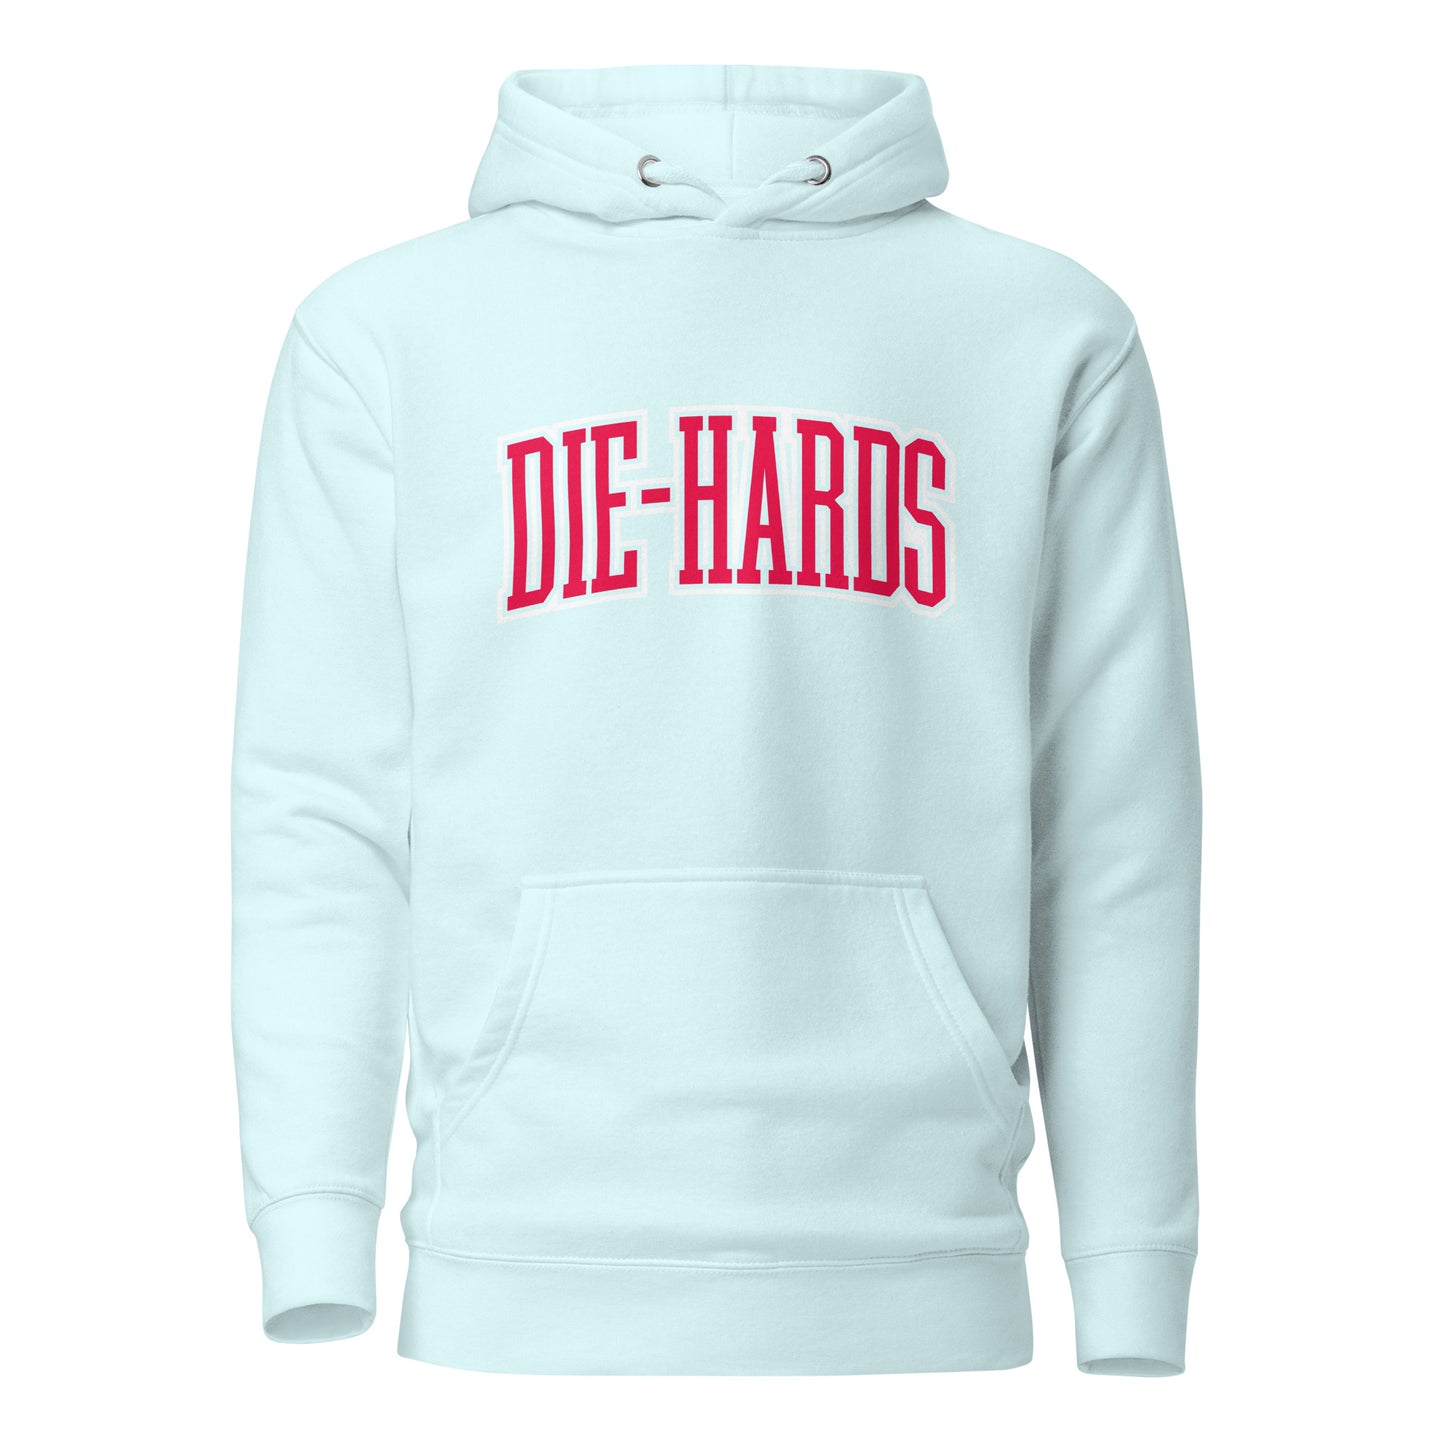 Die-hards Team Hoodie